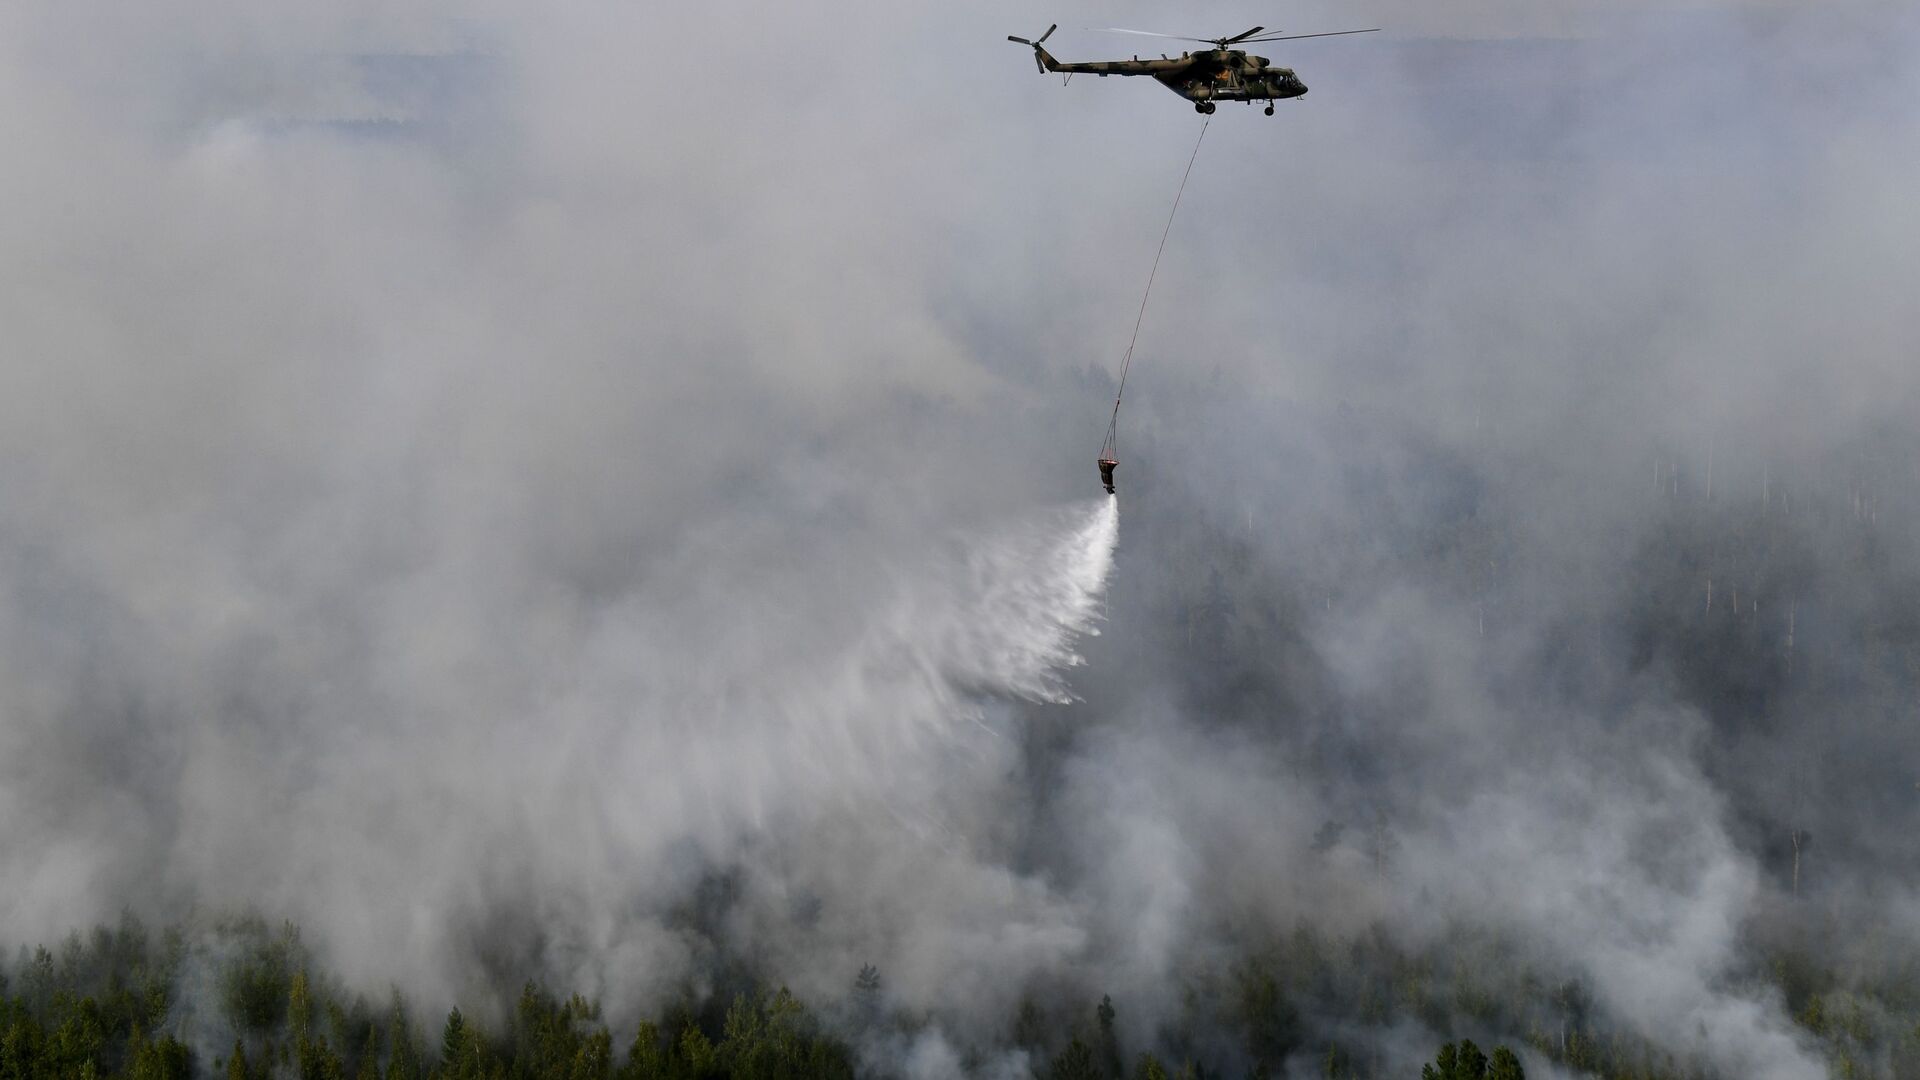 Helikopter Mi-8 gasi požar u Krasnojarskom kraju Rusije - Sputnik Srbija, 1920, 02.08.2021